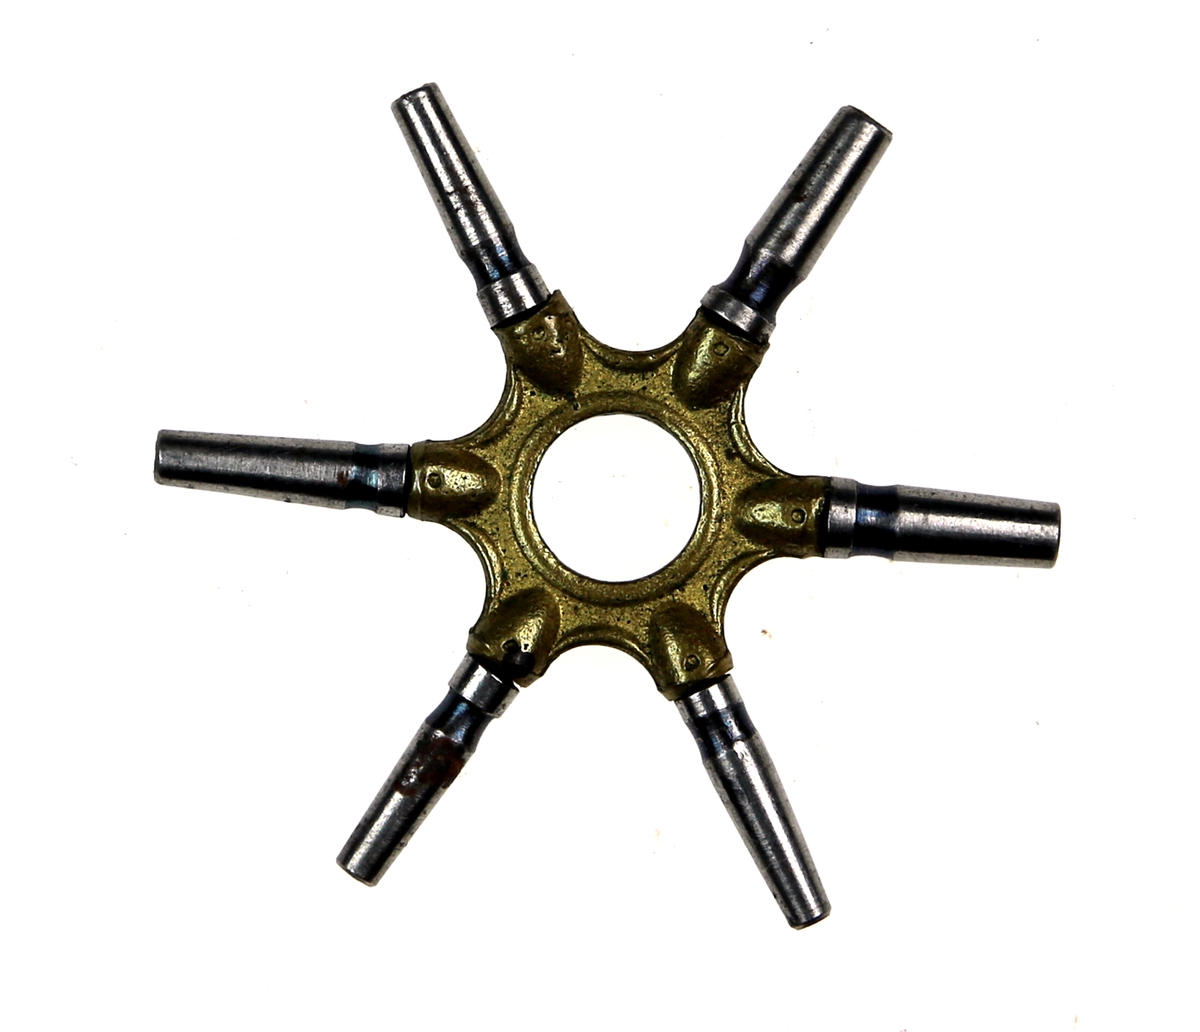 Nøkkel støpt i messing  og jern/stål, med 6 trekkere i en stjerneform